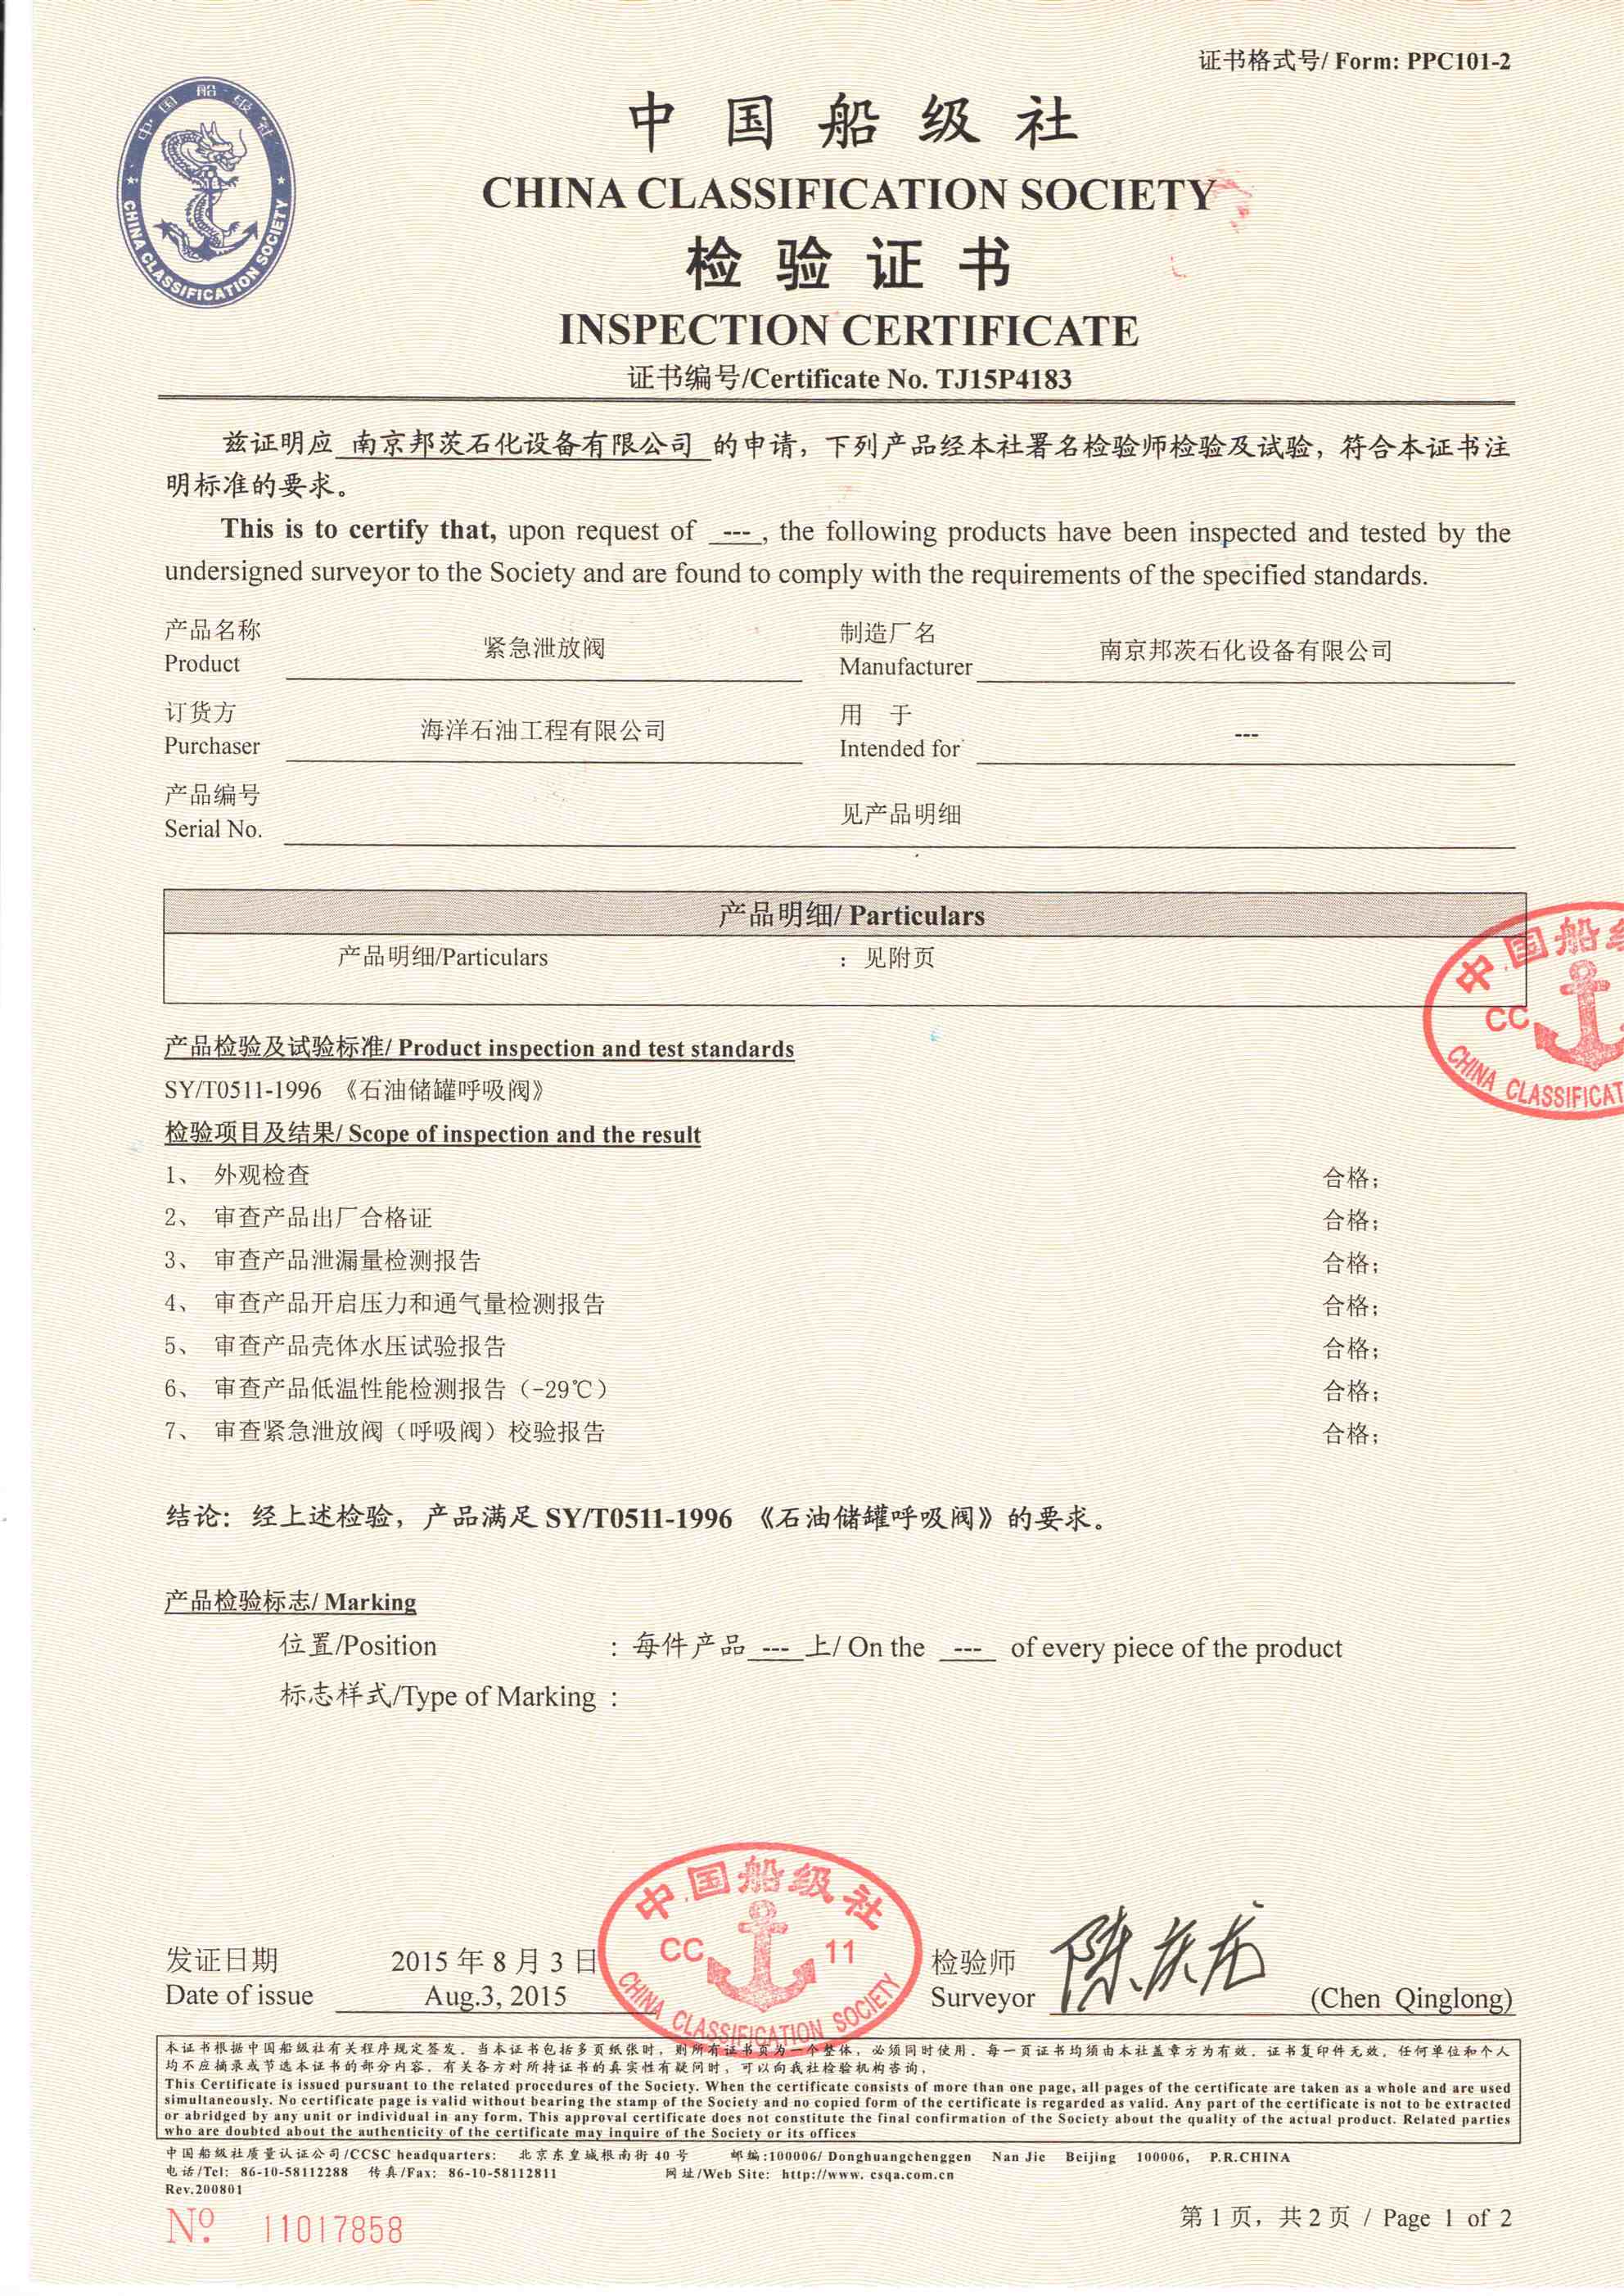 呼吸閥中國船級社、南京鍋檢院認證